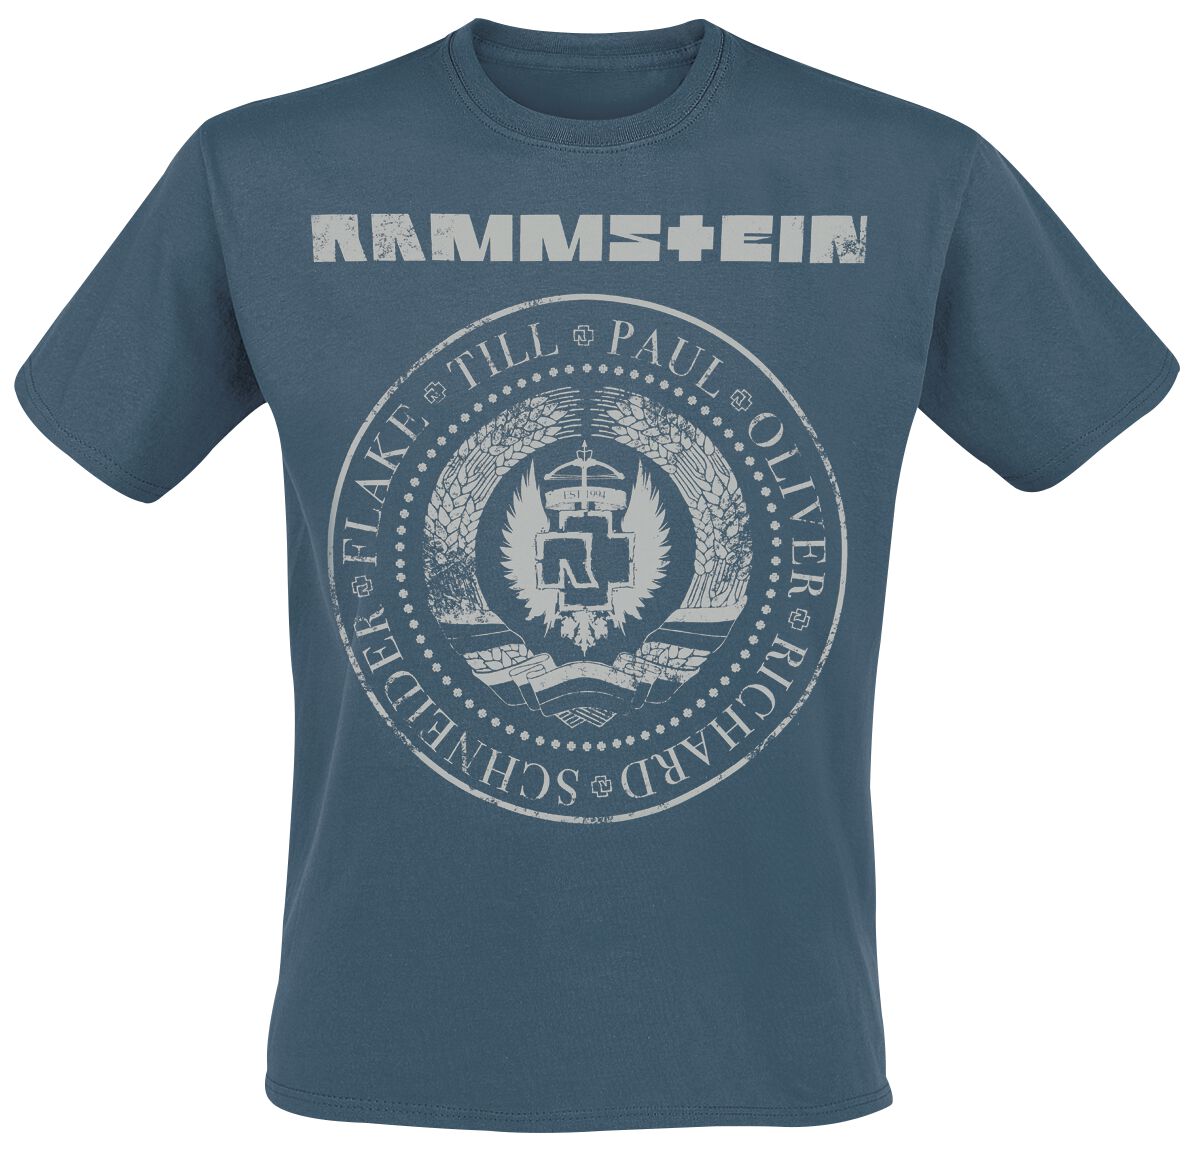 Rammstein T-Shirt - Est. 1994 - S bis XXL - für Männer - Größe S - blau  - Lizenziertes Merchandise!